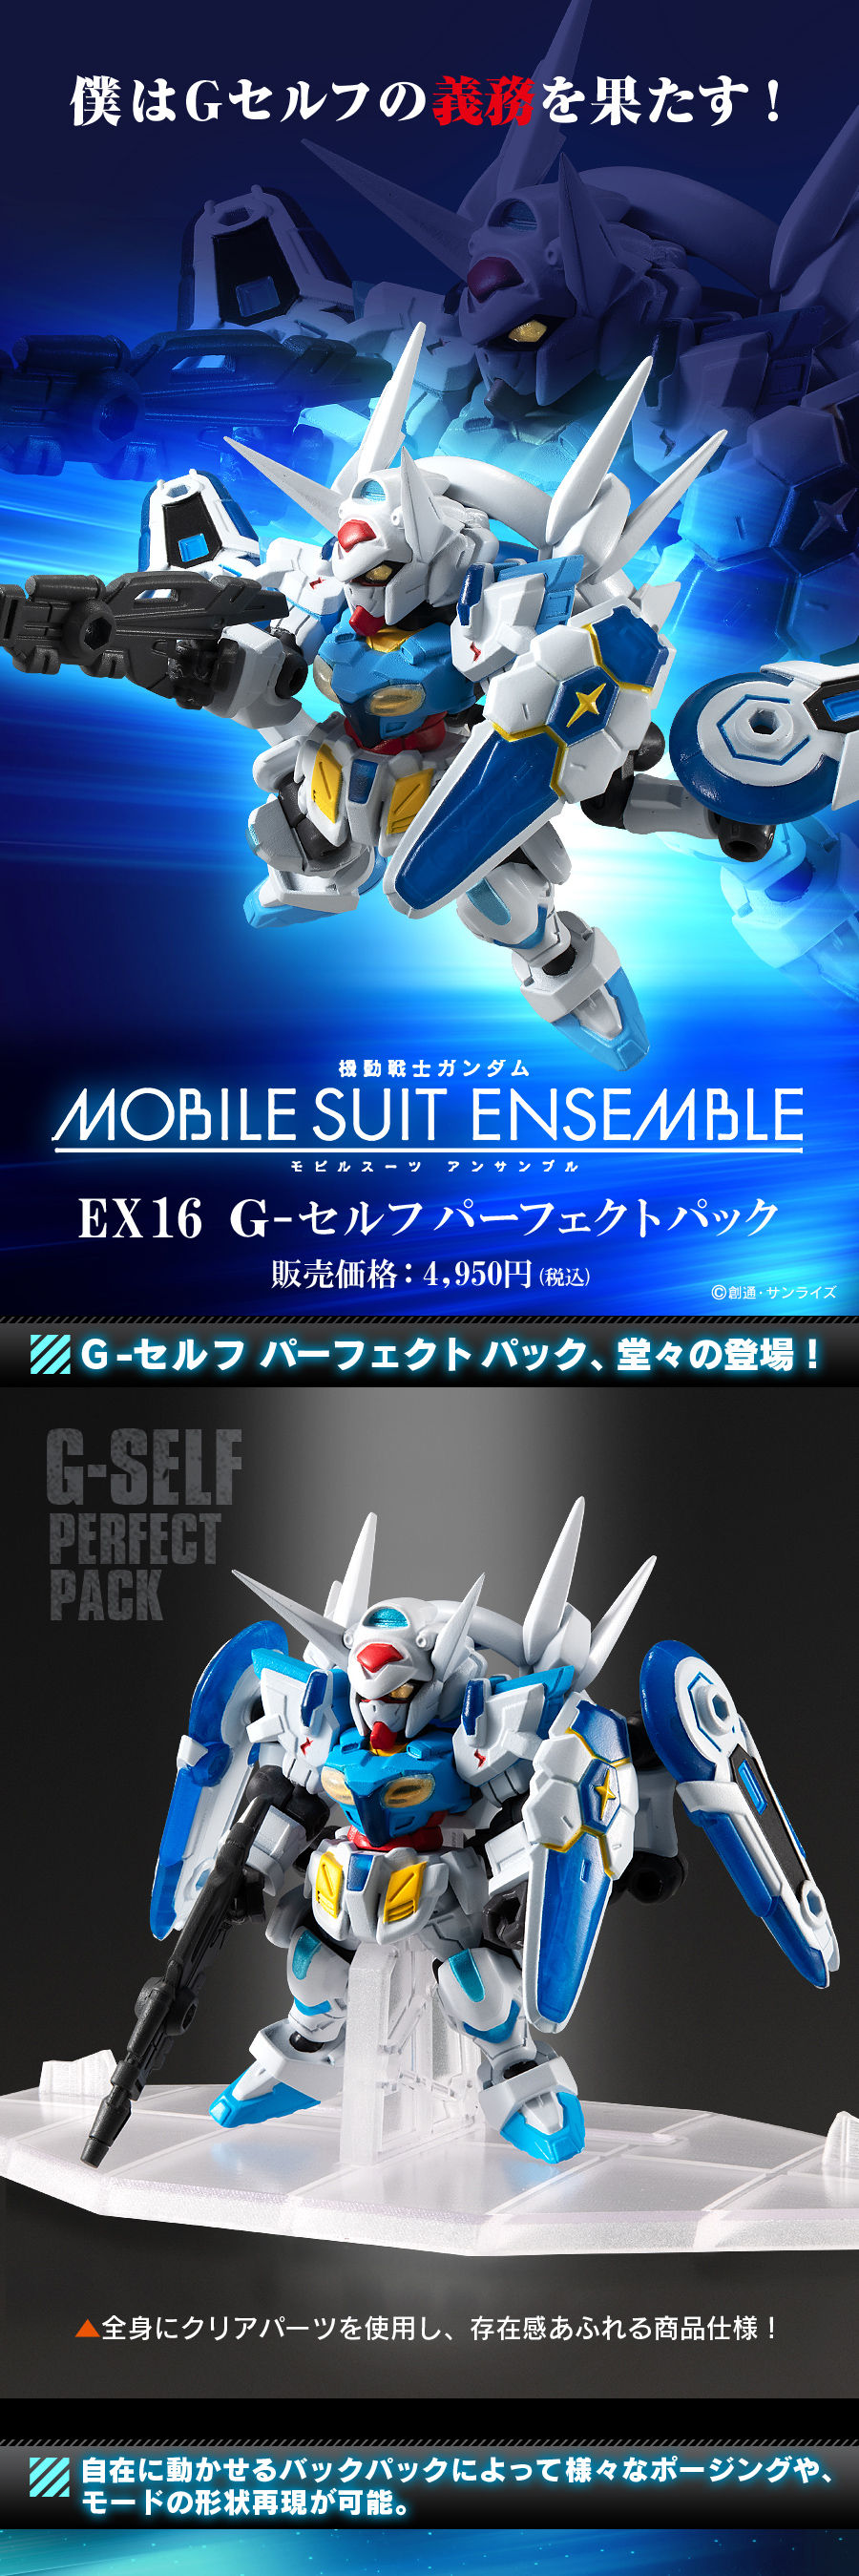 機動戦士ガンダム Mobile Suit Ensemble Ex16 G セルフパーフェクトパック ガンダムシリーズ 趣味 コレクション プレミアムバンダイ公式通販